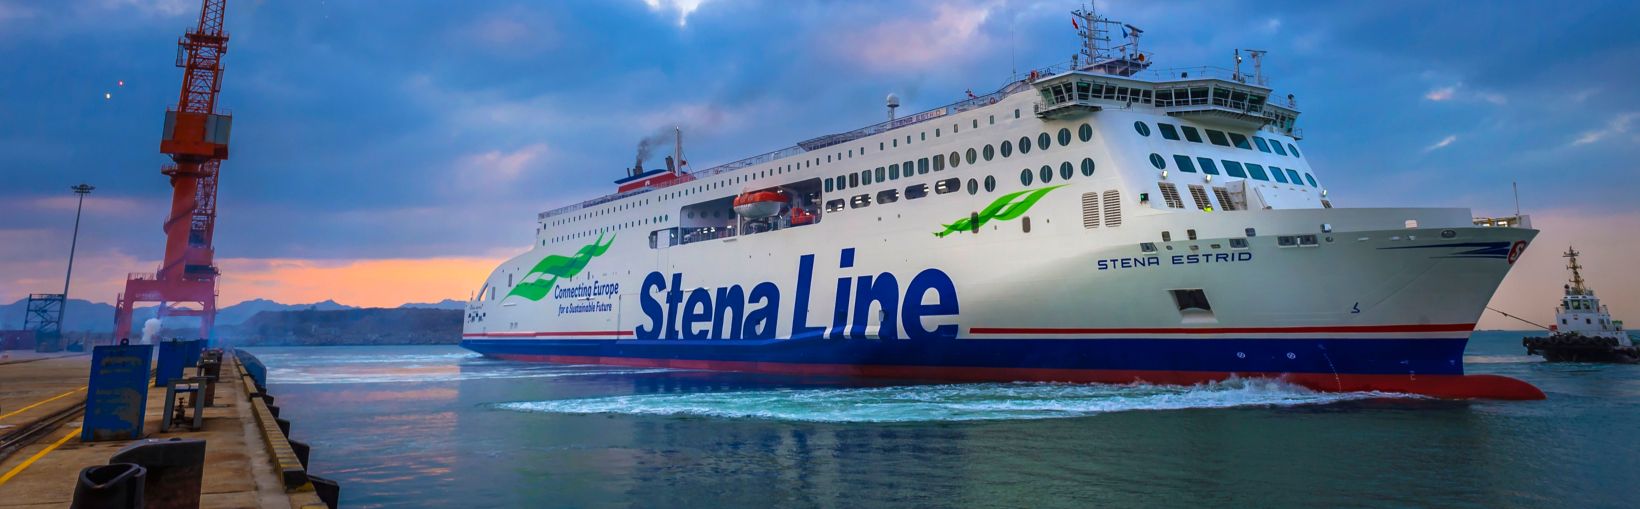 Nave Stena Estrid che lascia il porto